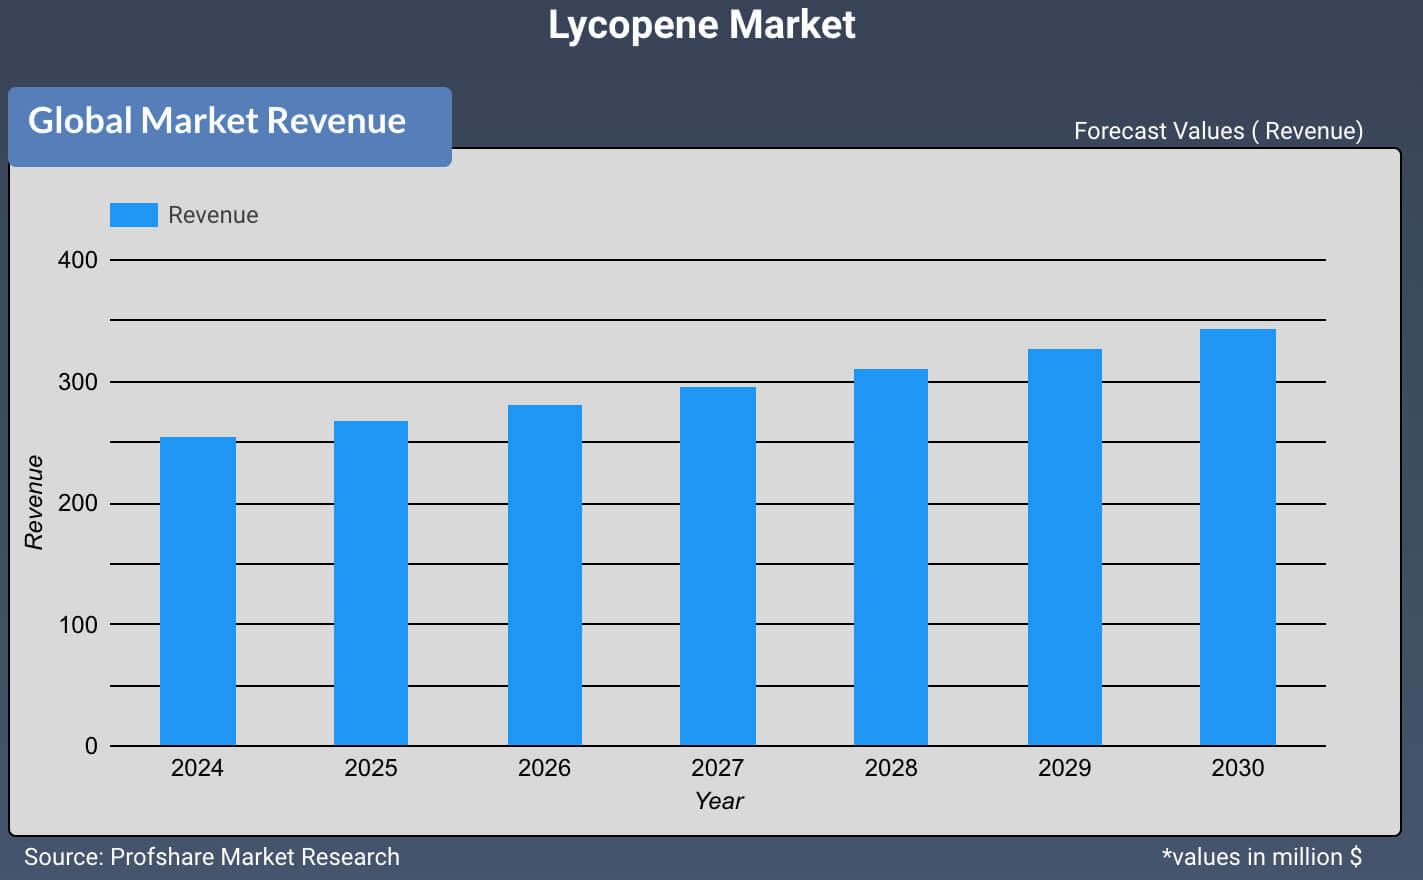  Lycopene Market 